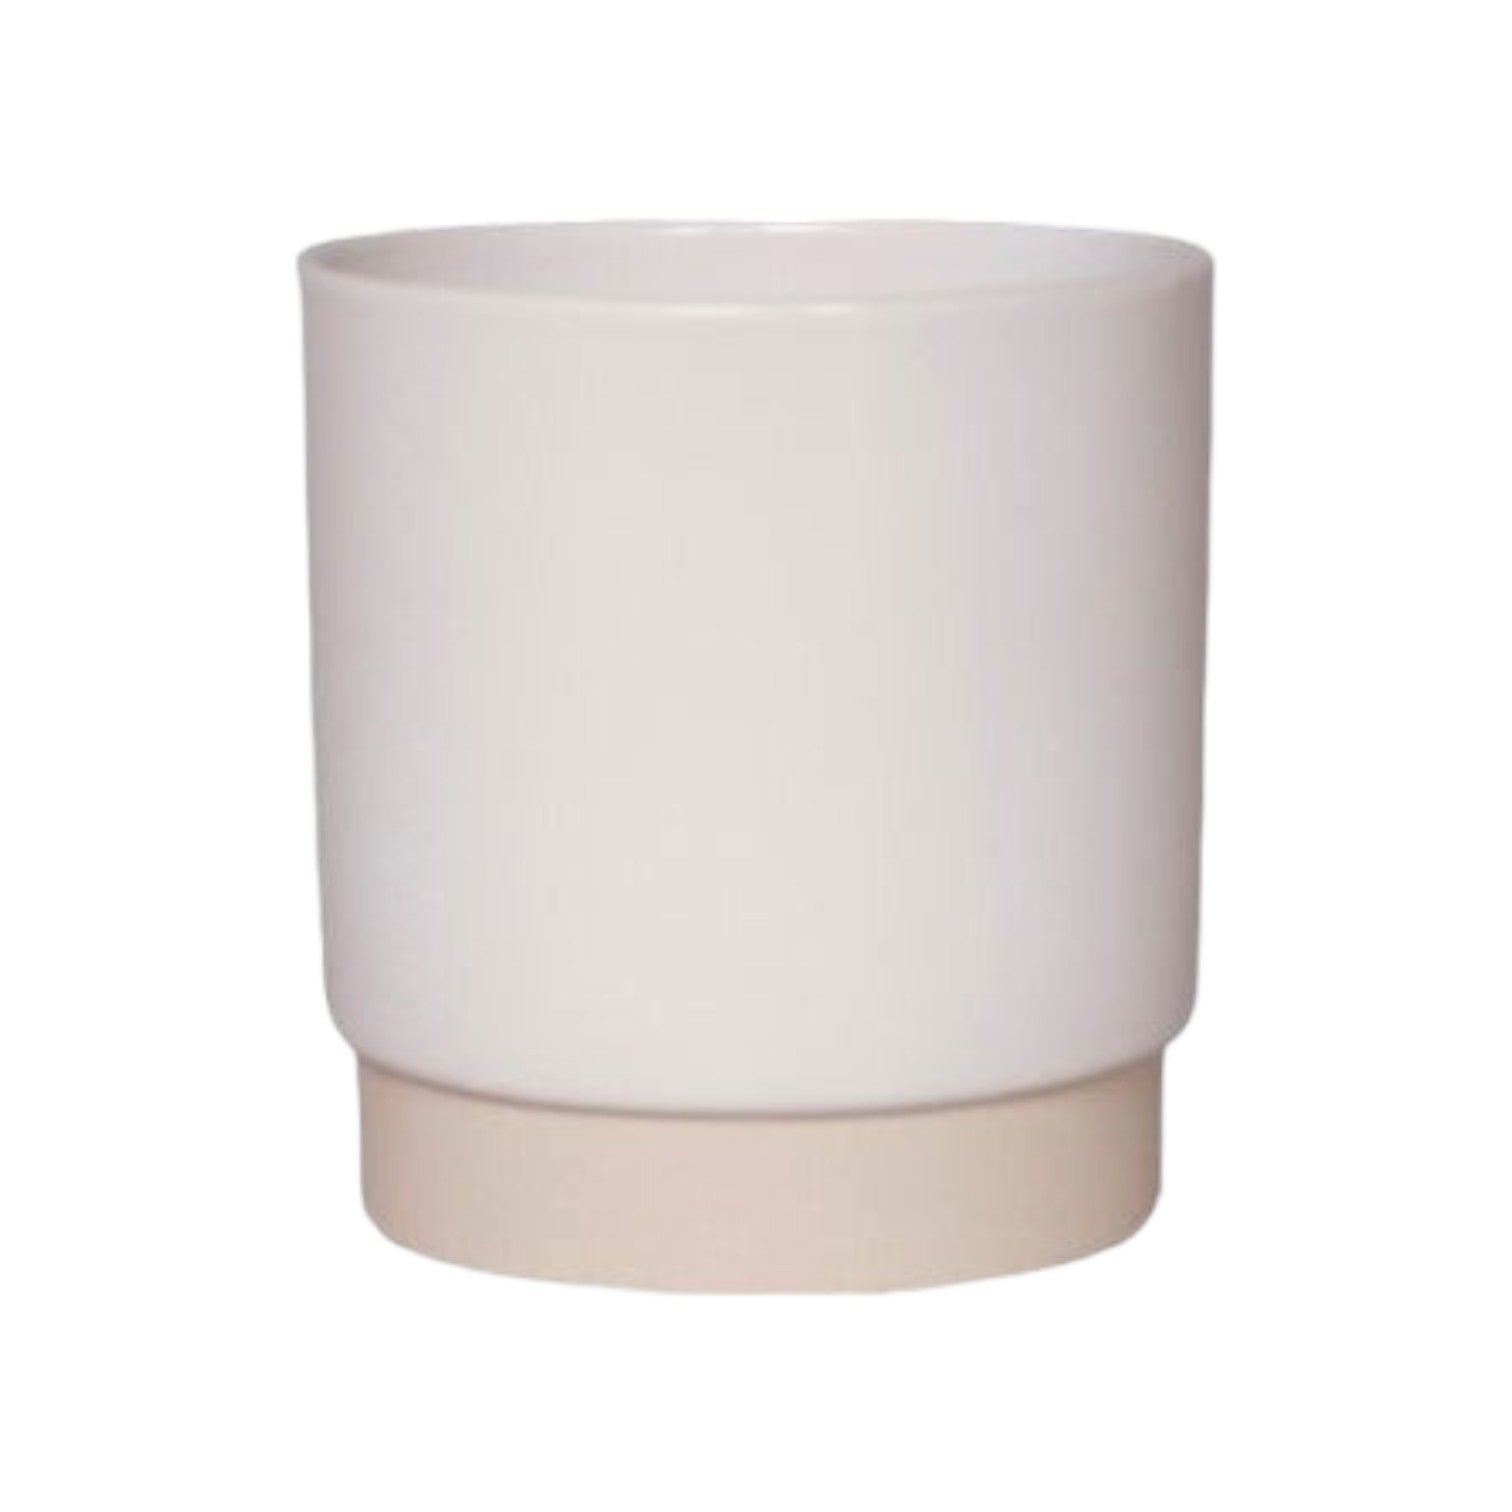 Ceramics Limburg - Bloempot 'Eno Duo' (8cm) - White